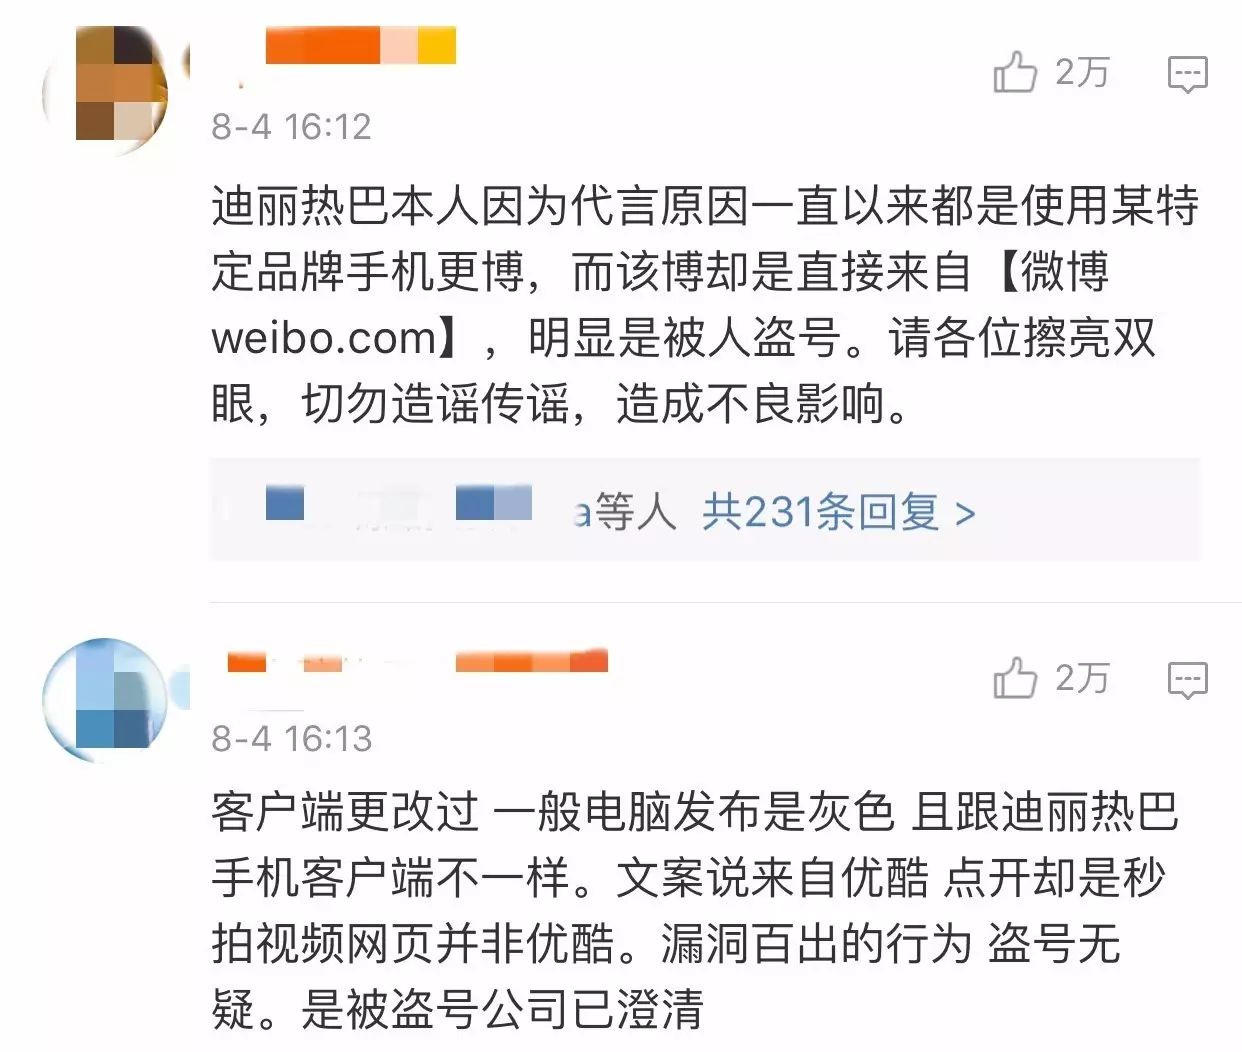 吴亦凡迪丽热巴鹿晗等明星微博ins账号被盗,到底是谁动的手?!